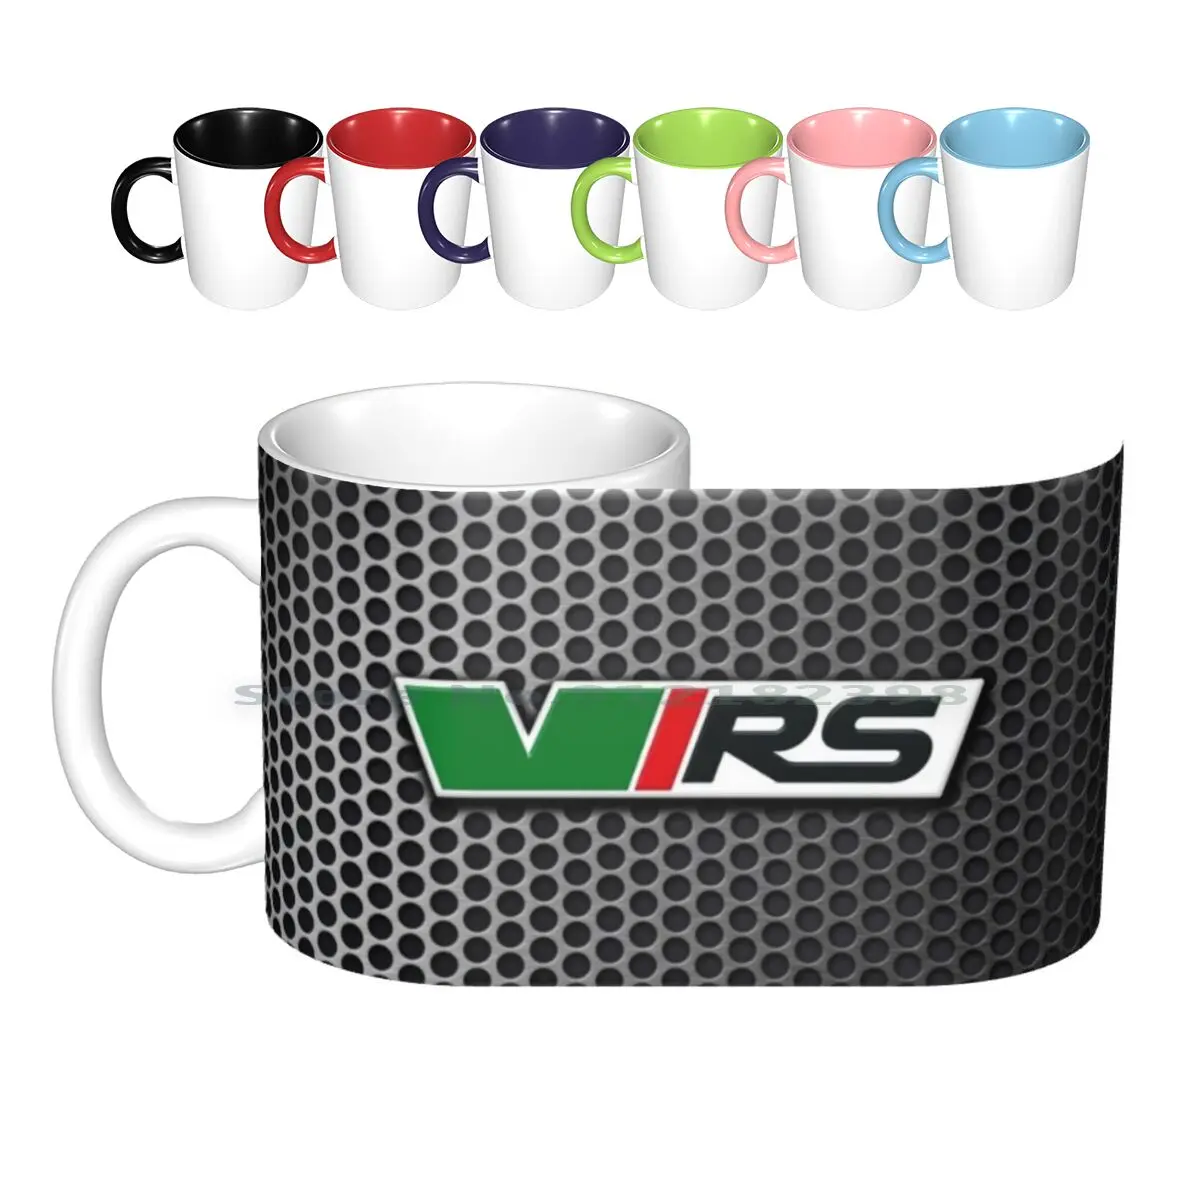 Skoda Vrs Emblem On Steel Grille Ceramic Mugs Coffee Cups Milk Tea Mug Skoda Octavia Fabia Vrs Sport Vag Tdi Performance Logo